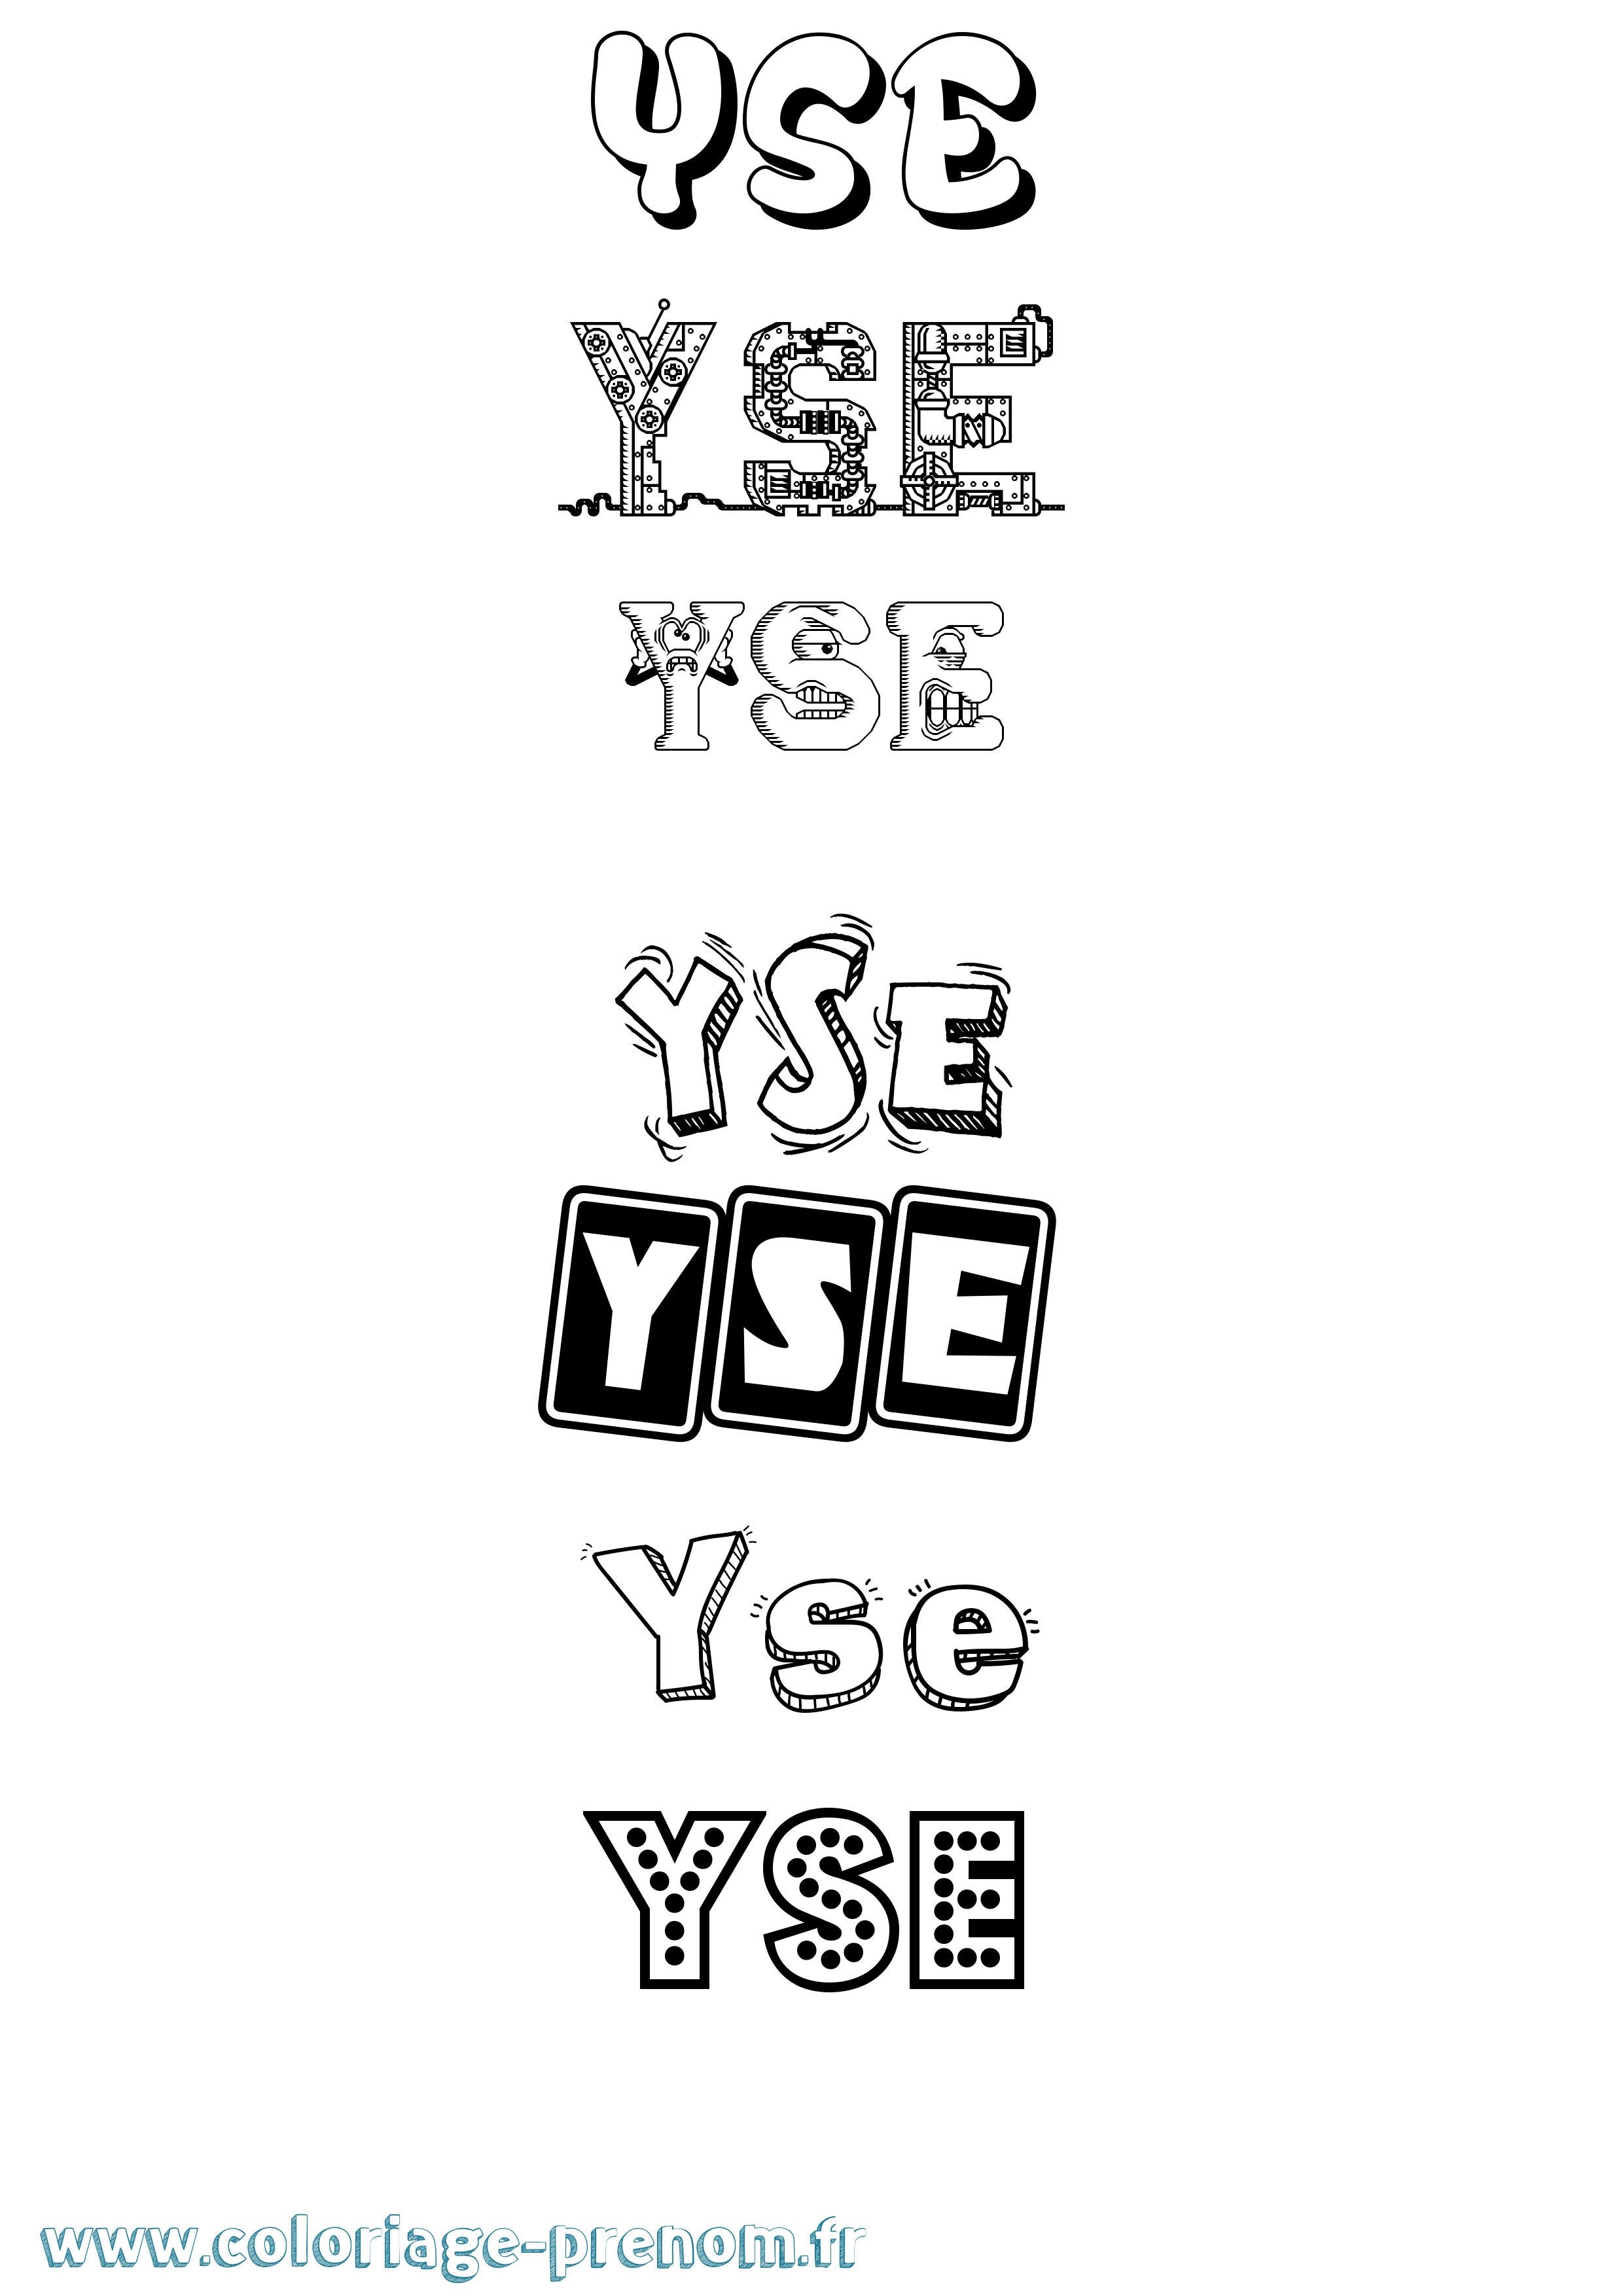 Coloriage prénom Yse